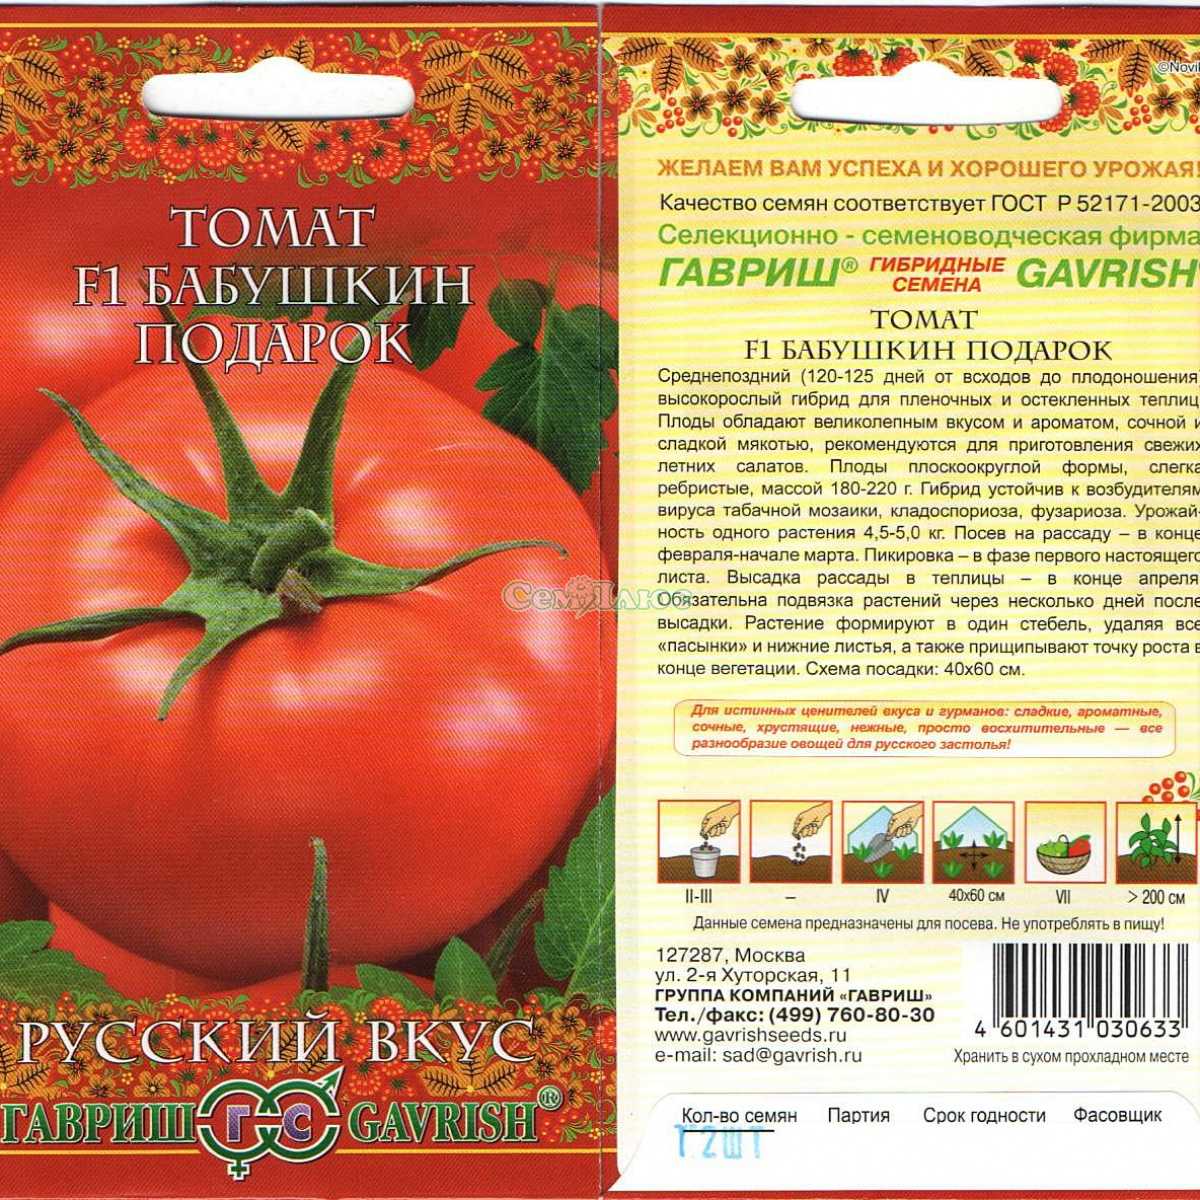 Томат Бабушкино: характеристика и описание сорта, отзывы + фото Урожайность культуры, рекомендации по выращиванию